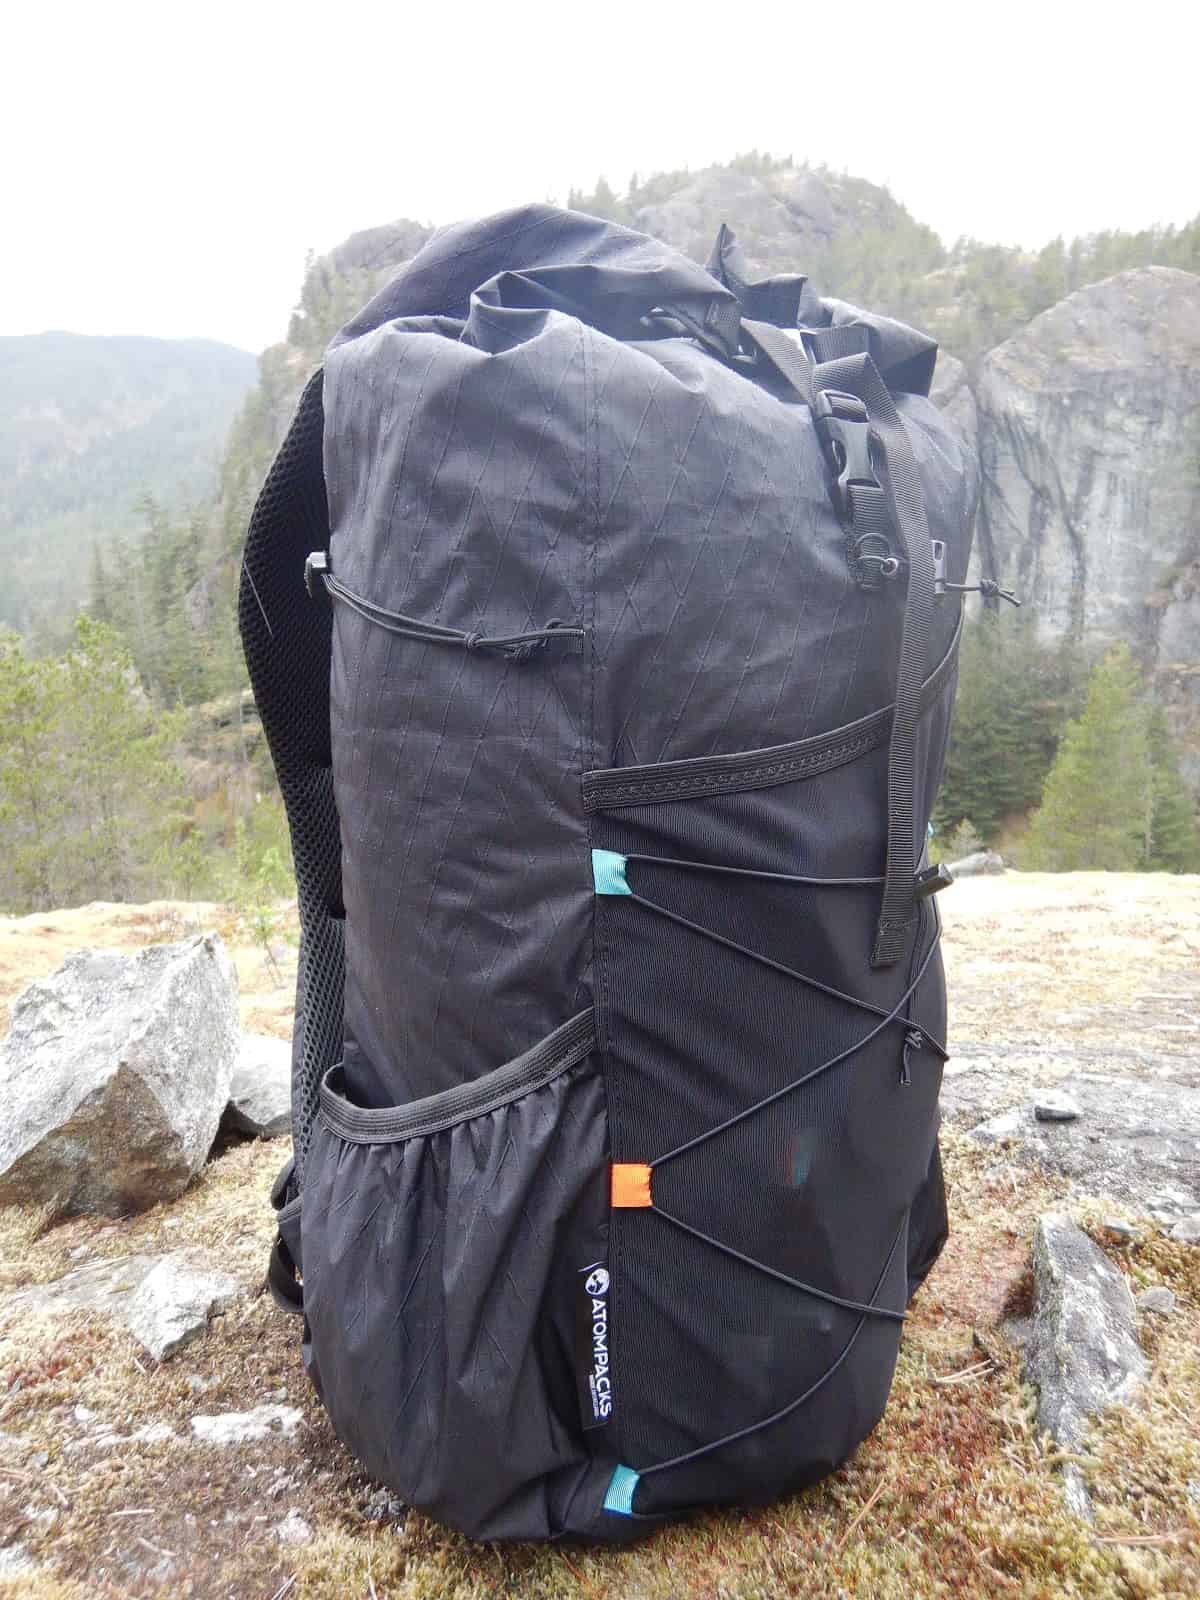 Atom Packs  Ultralight Backpacks Made to Order